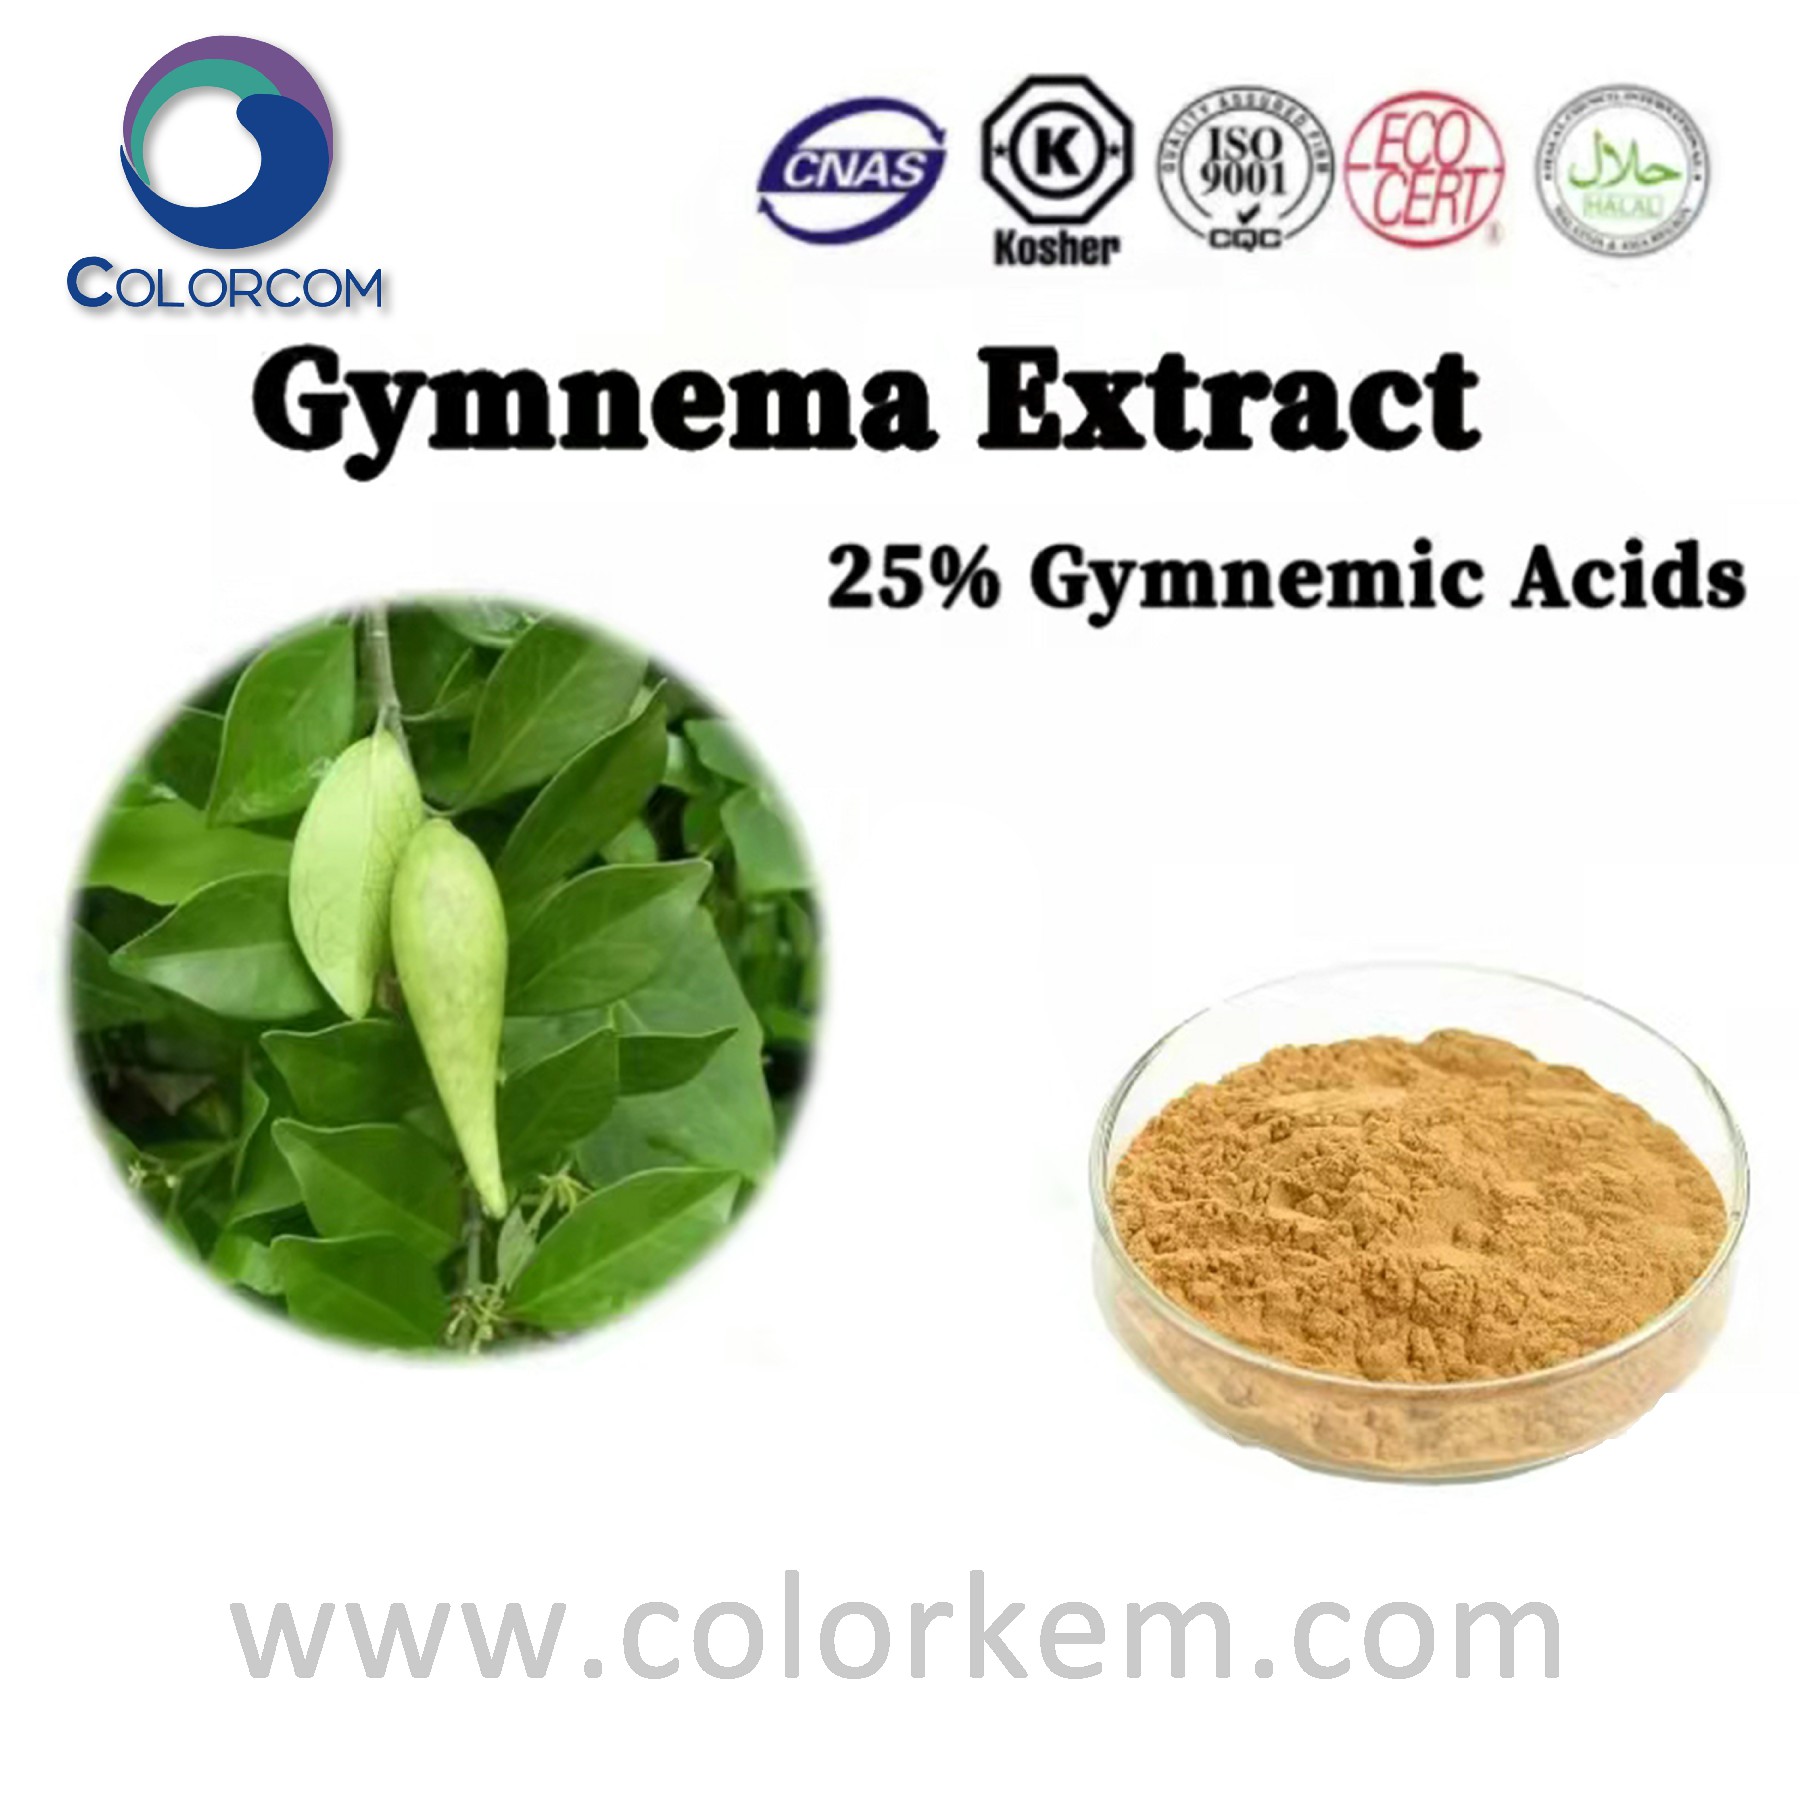 Gymnema extract gymnemic acids